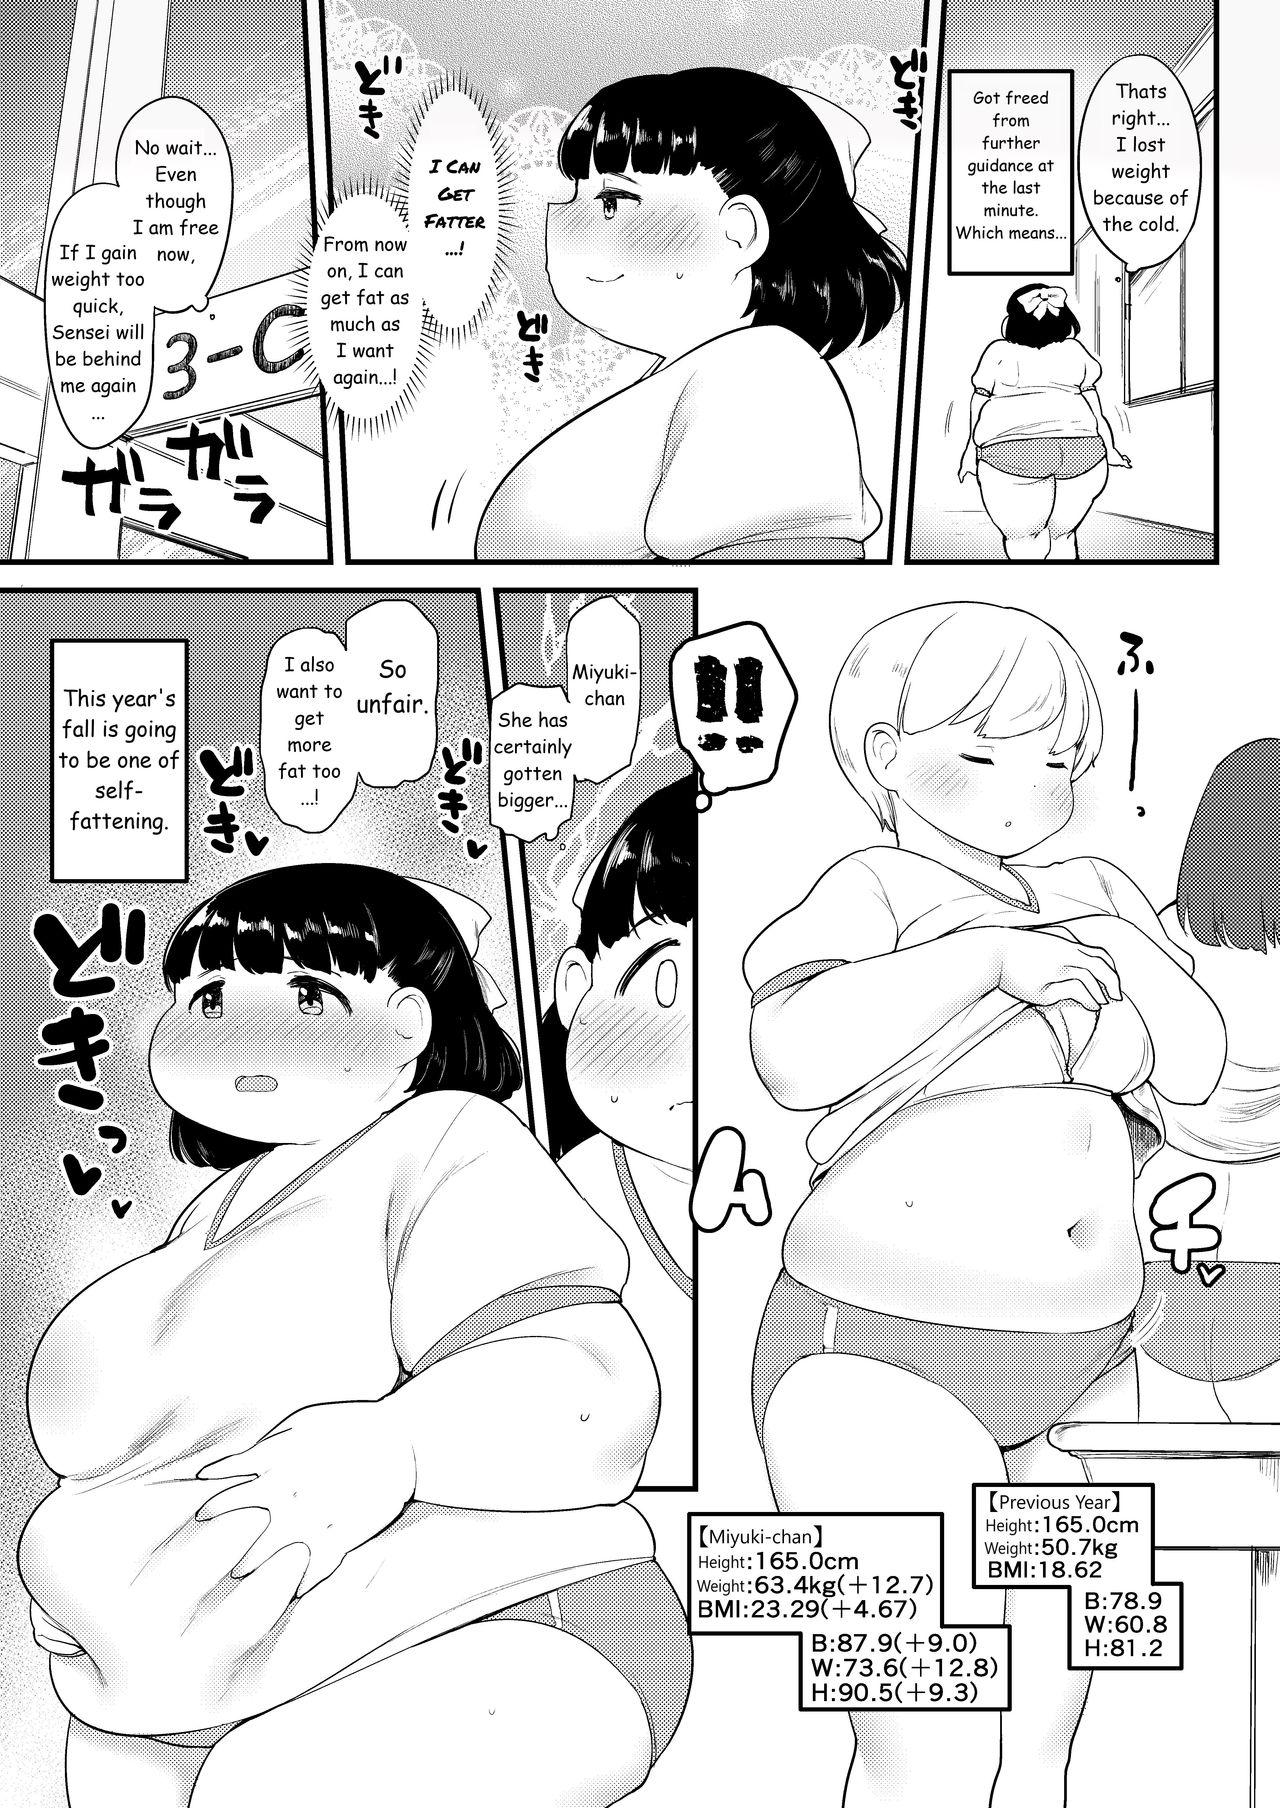 Ayano's Weight Gain Diary 75